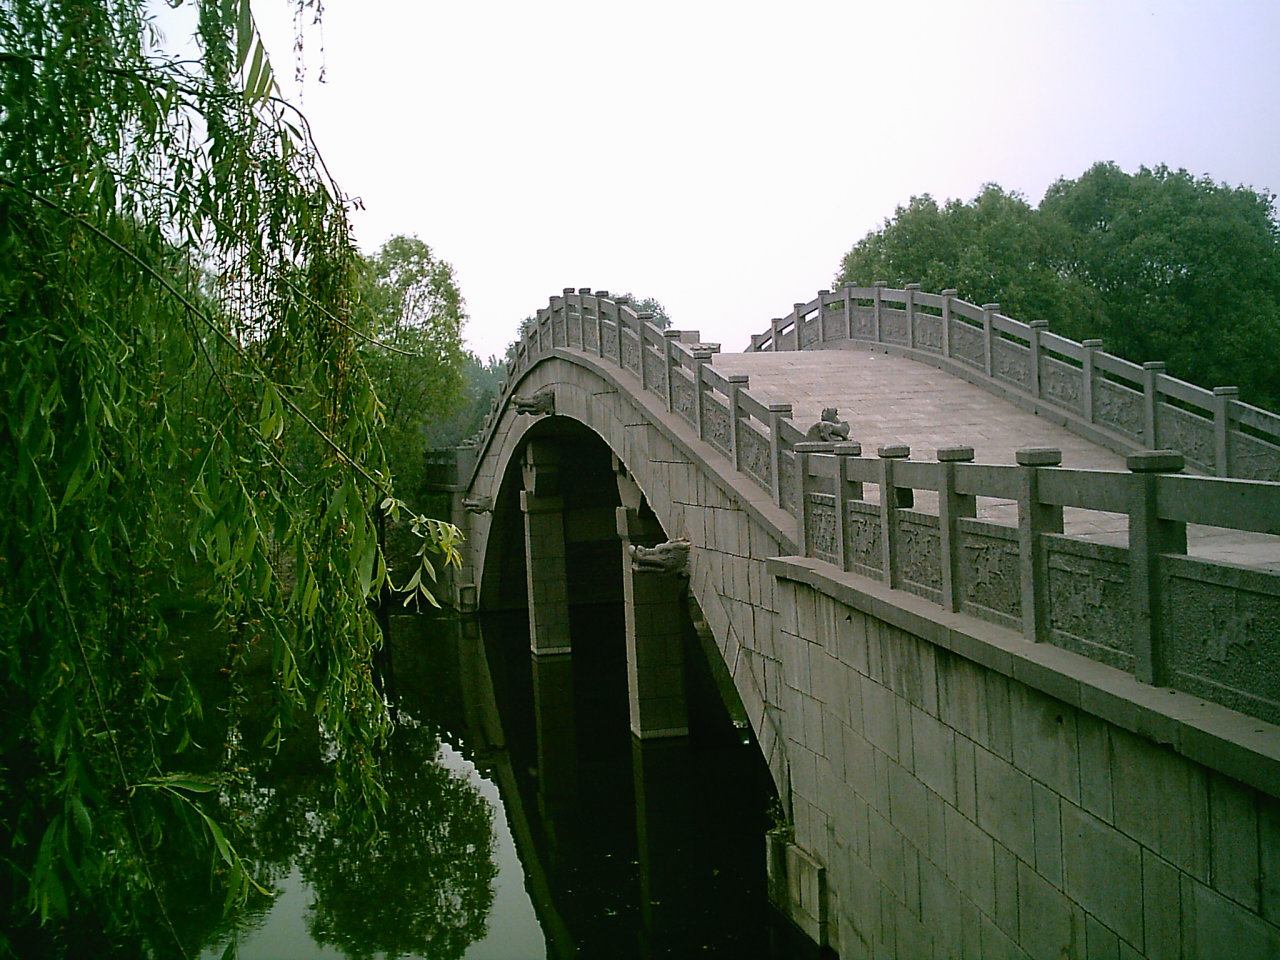 许昌灞陵桥公园门票图片